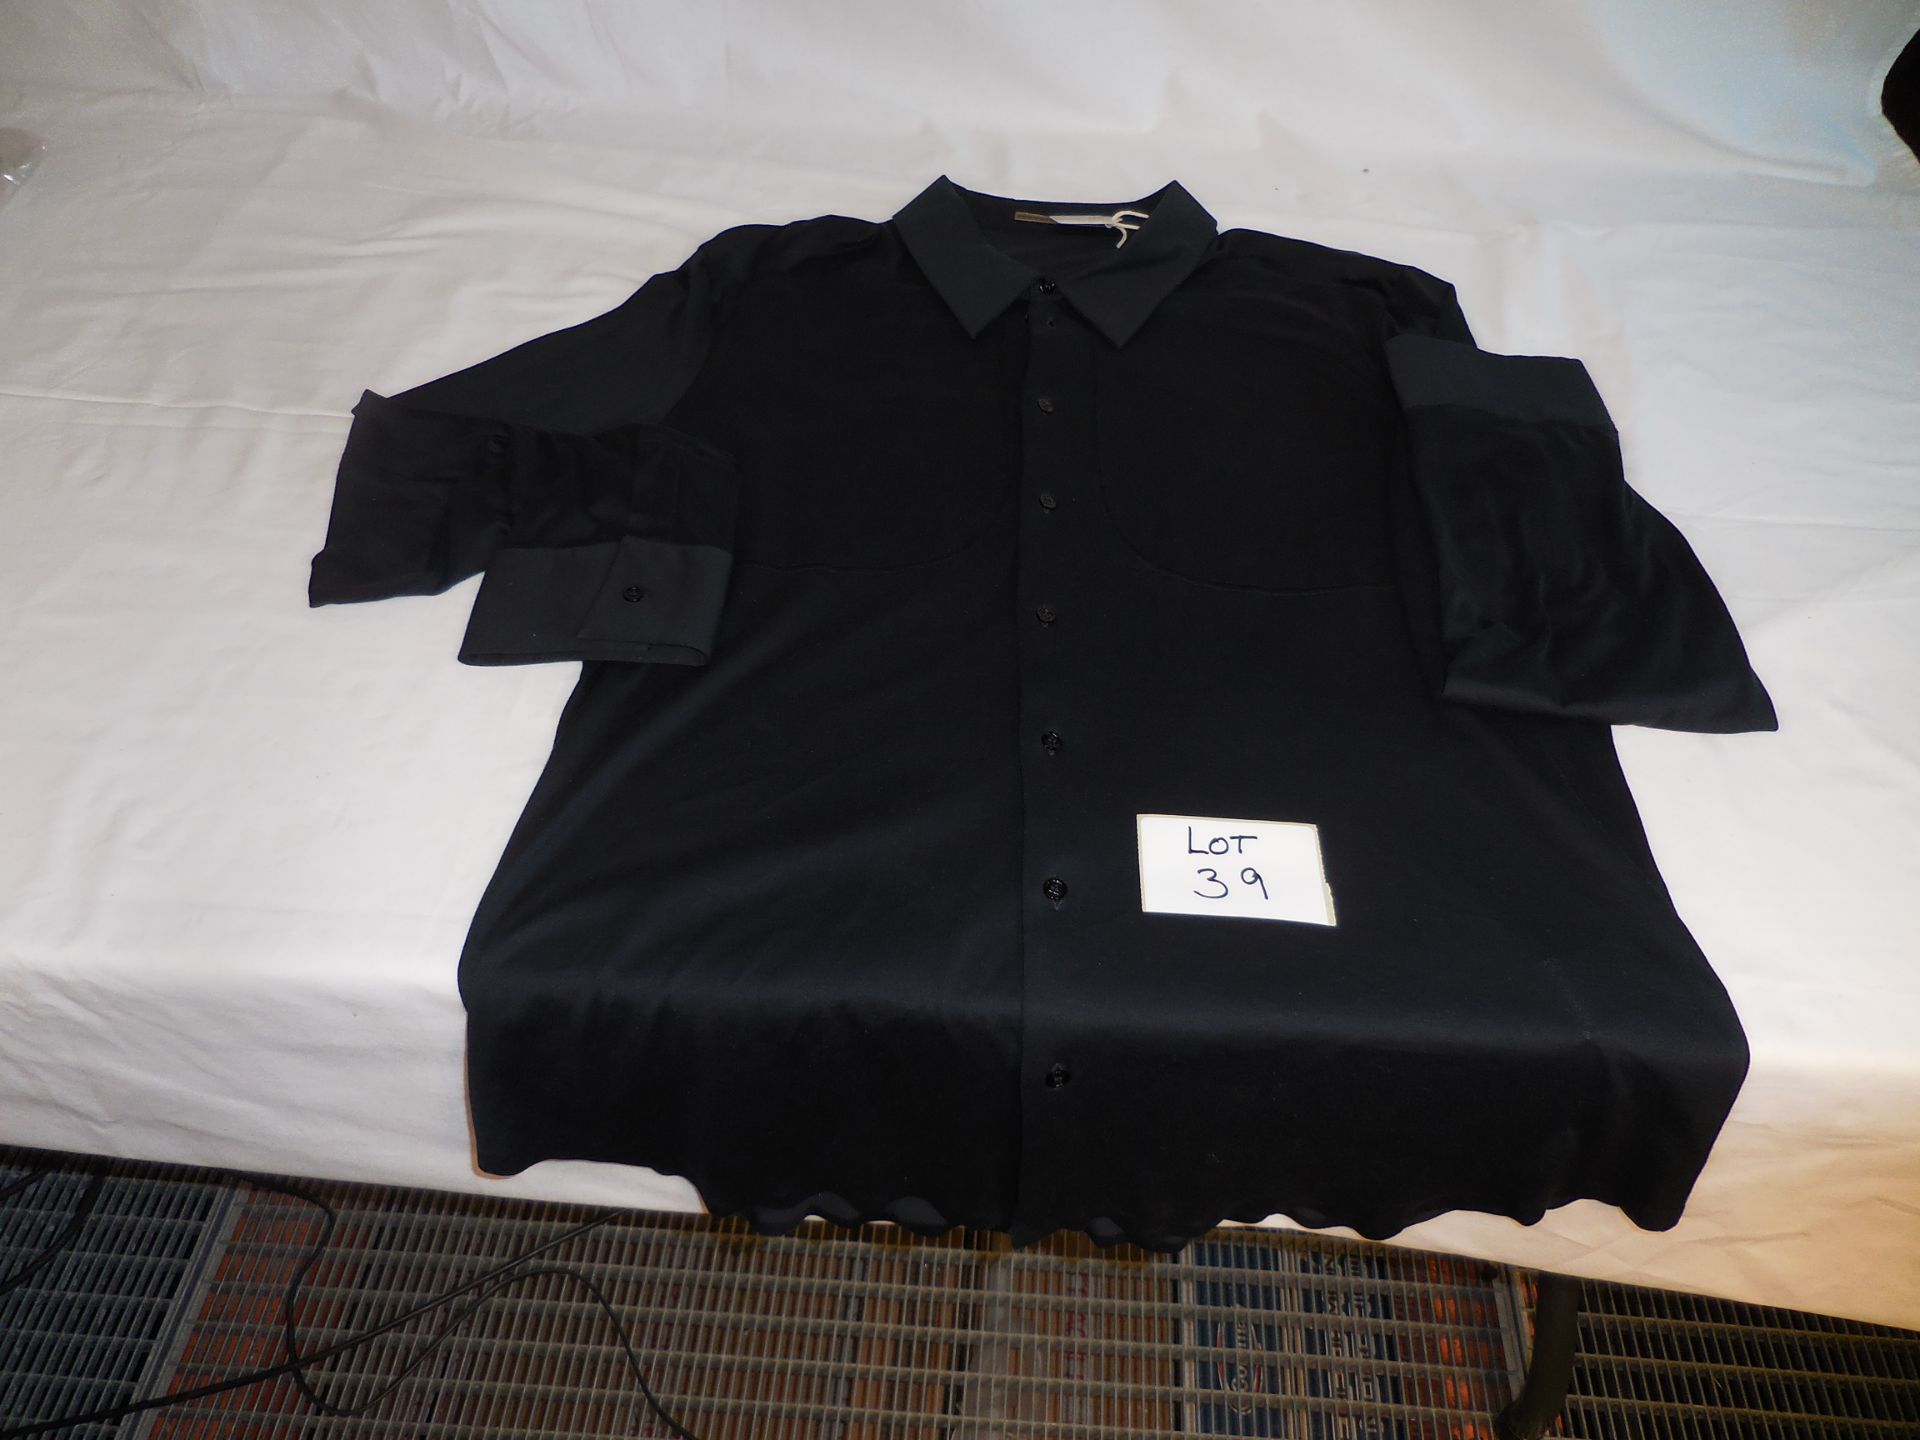 Gilost-Thermoco Shirt Colour Noir Size Xxl Retail Price £260